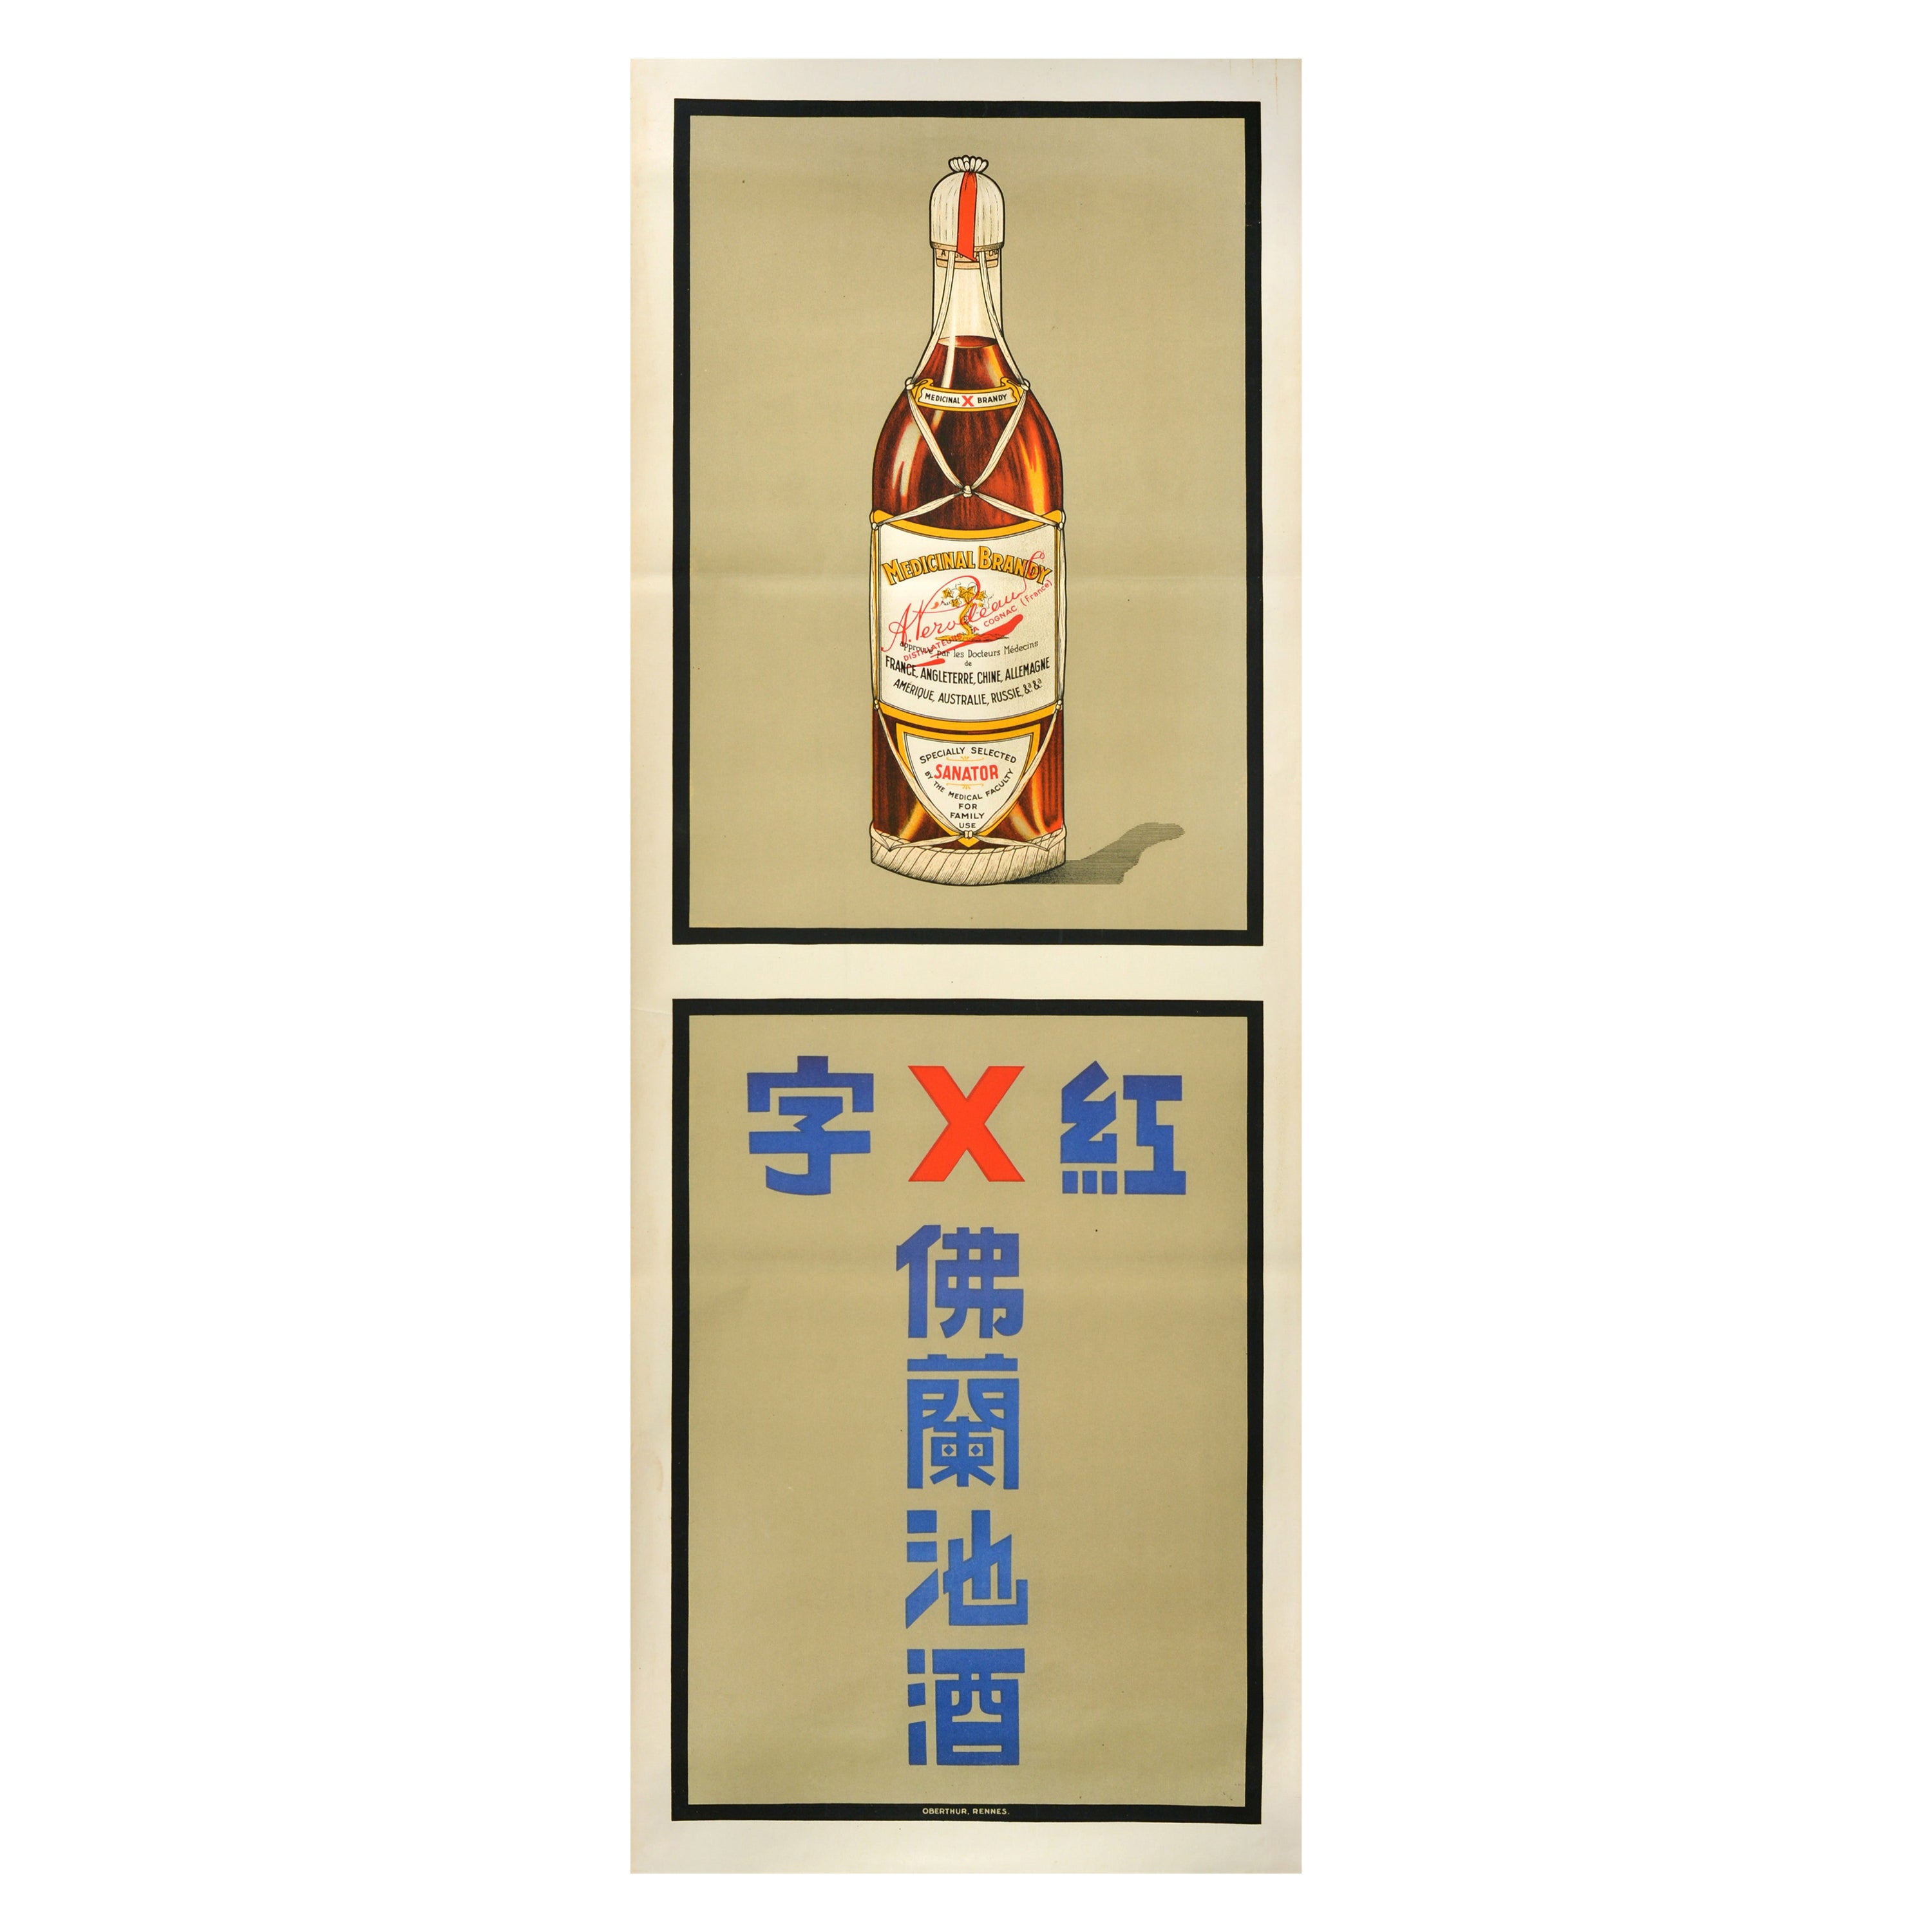 Affiche publicitaire originale pour les boissons médicales de Perodeau Sanator en vente